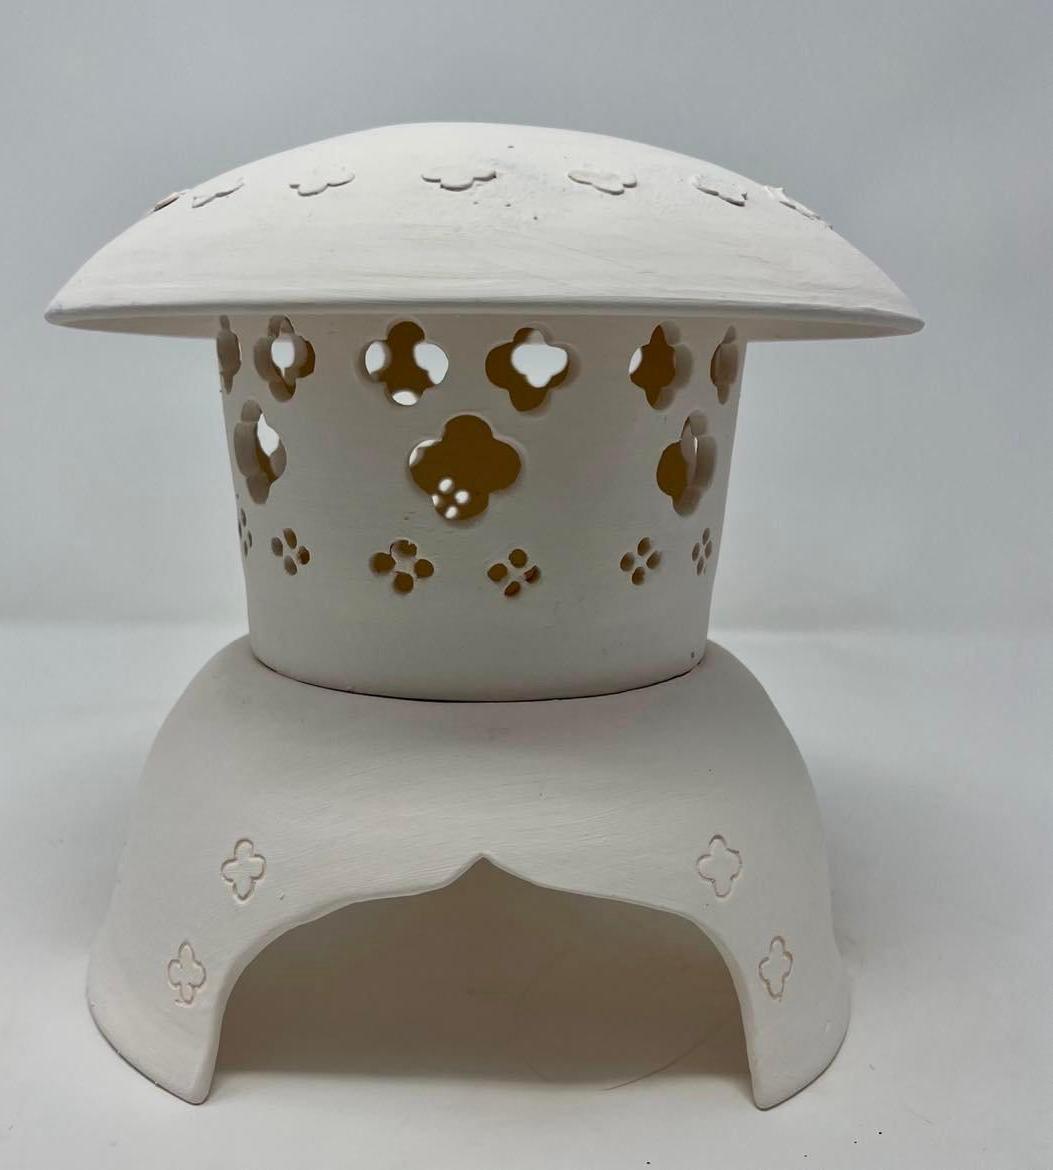 Parametric Surface Decoration for Double Curvature Ceramic Pieces